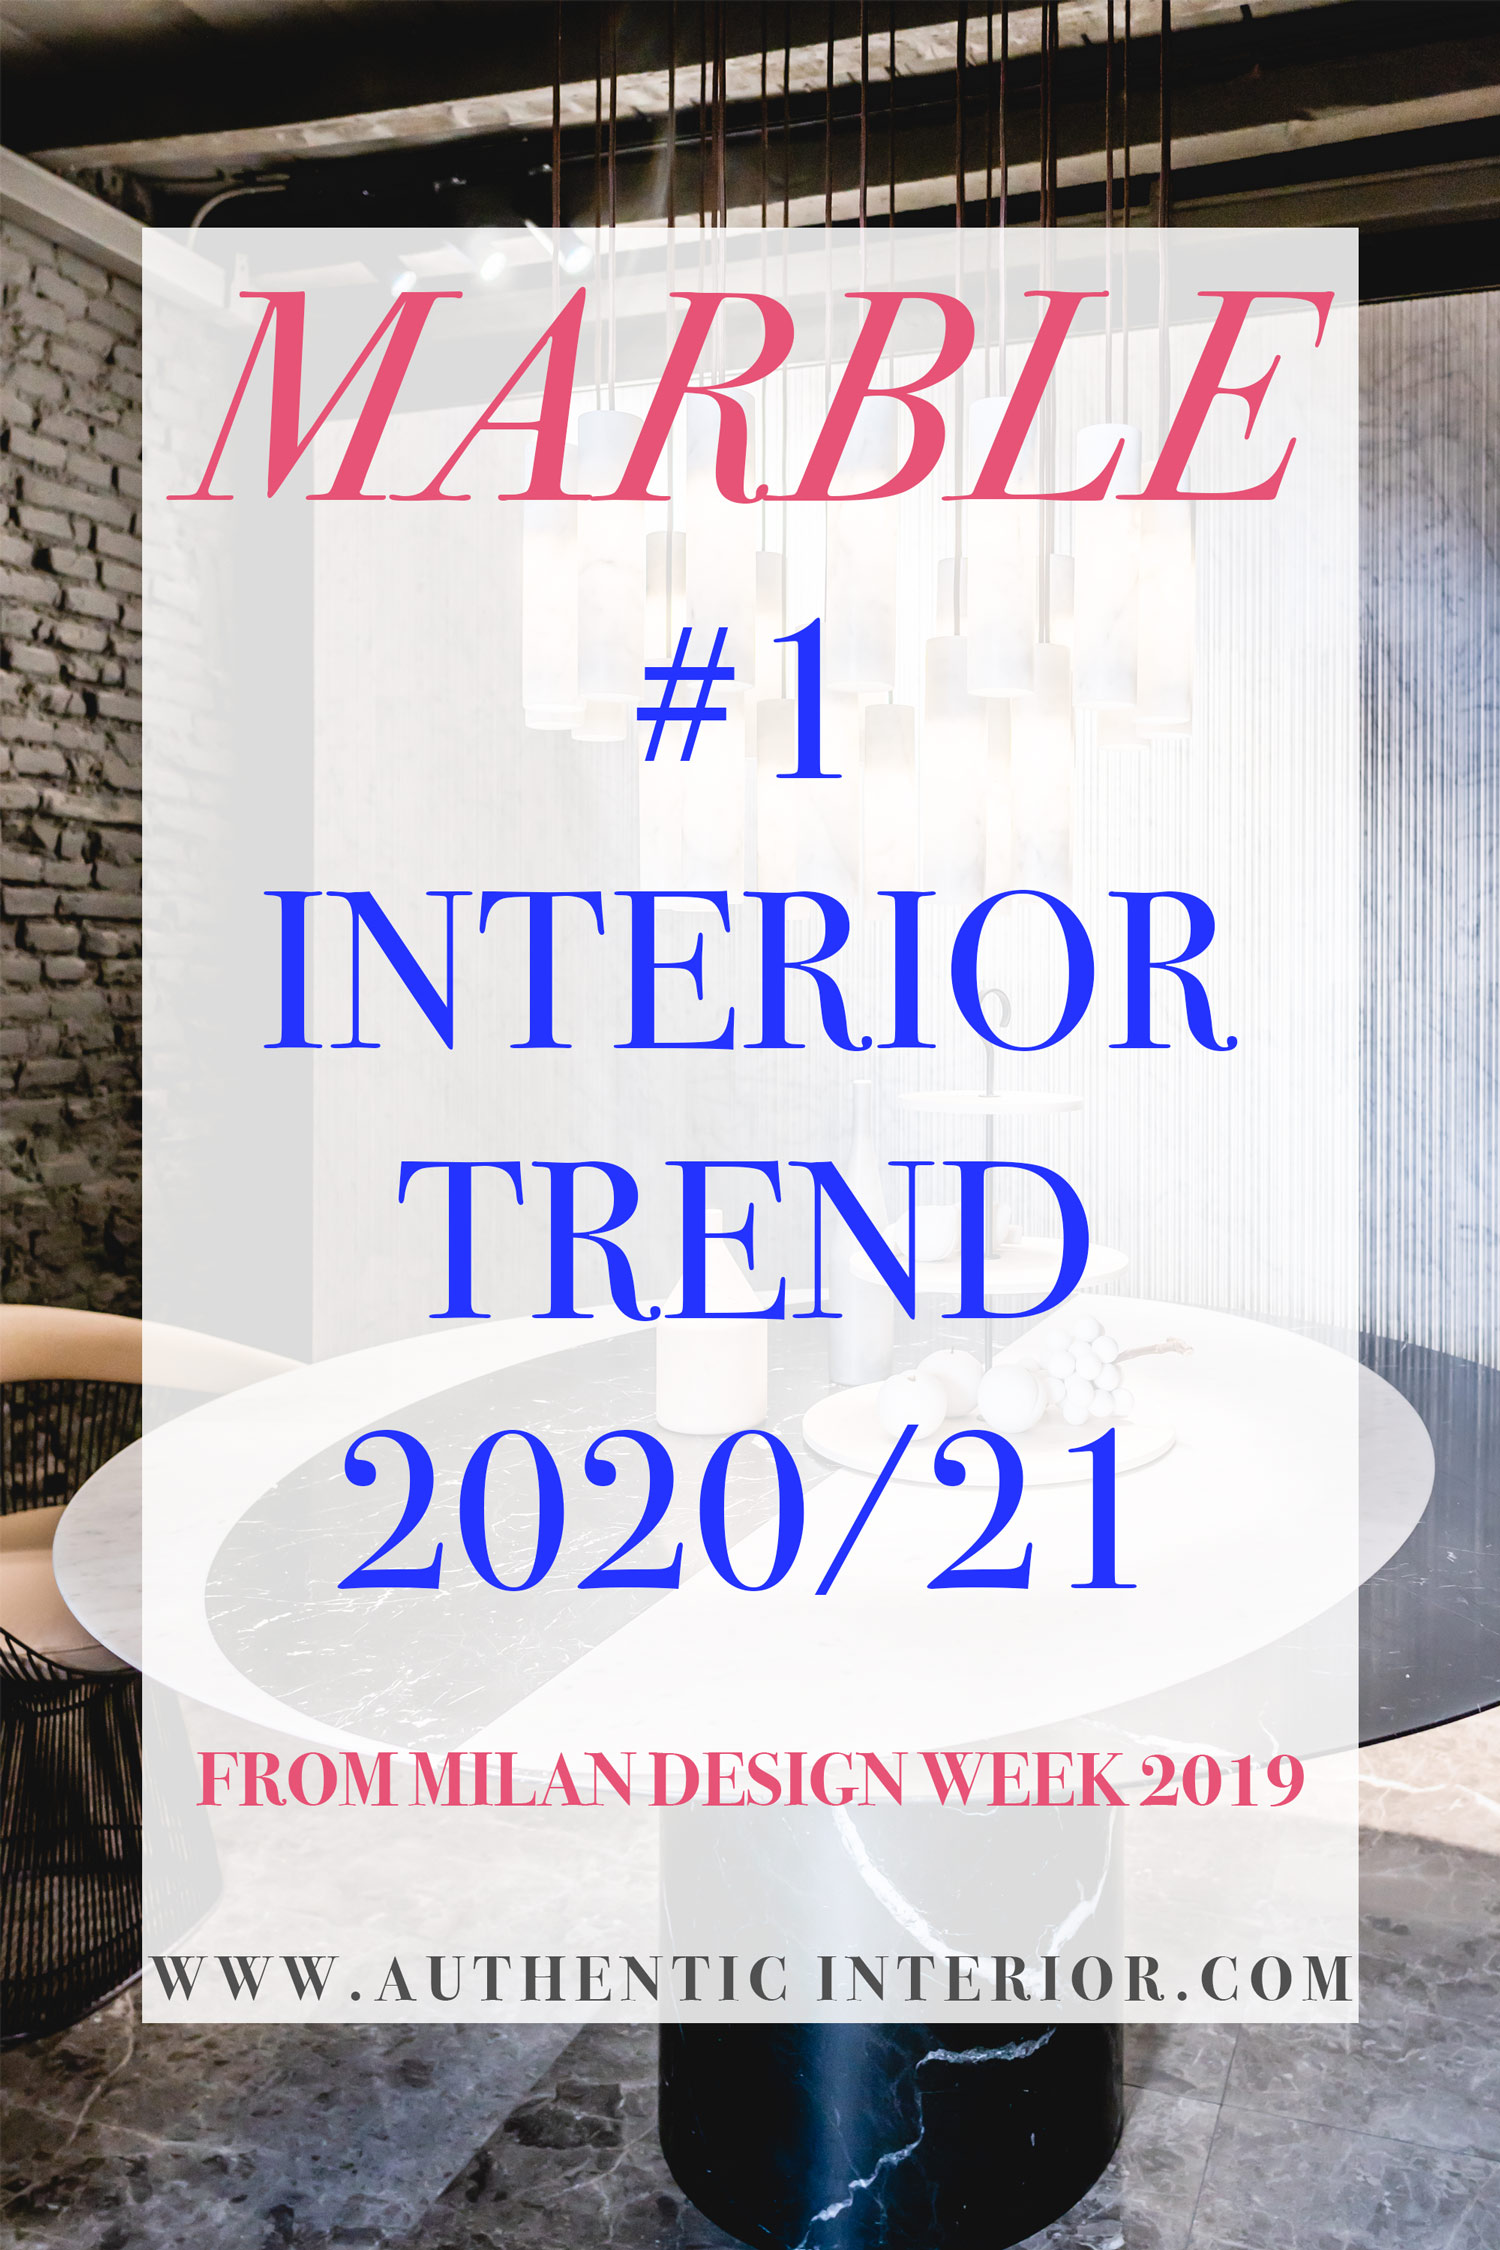 Interior design trends for 2020 - Marble interior trend - Authentic Interior design studio & blog www.authenticinterior.com